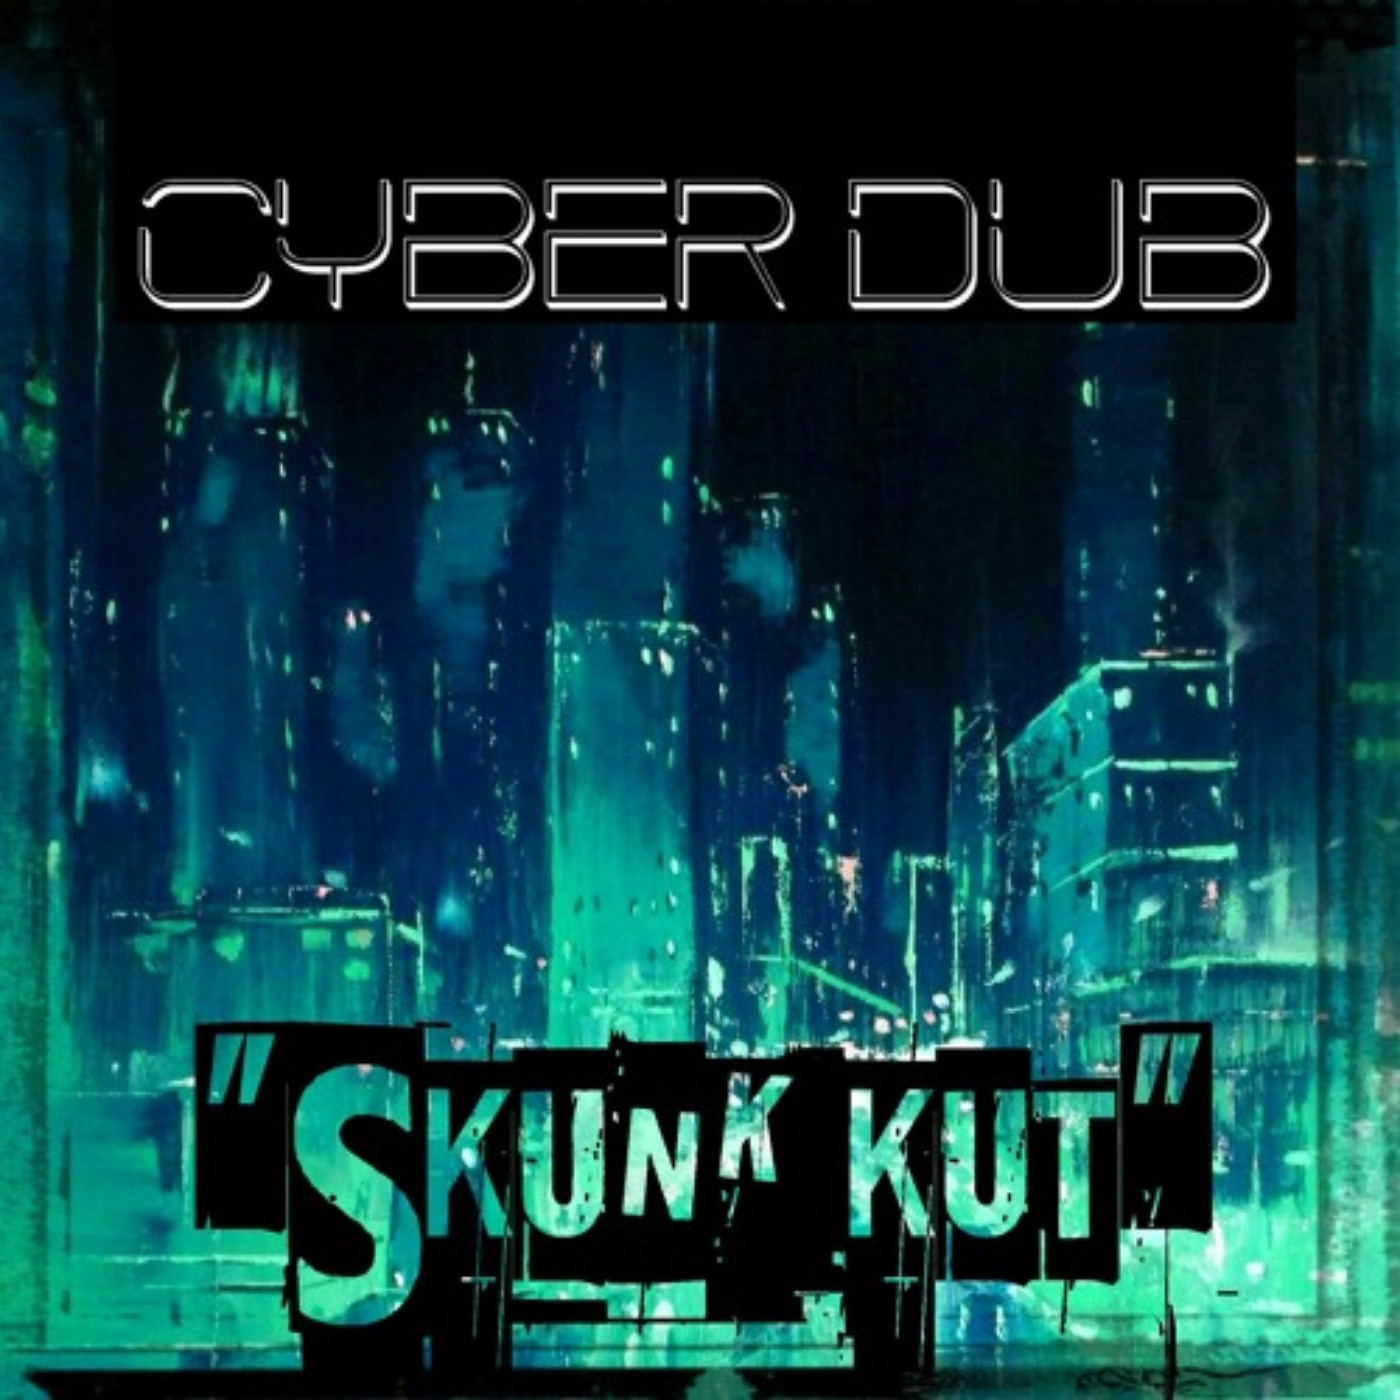 Skunk Kut - Cyber Dub